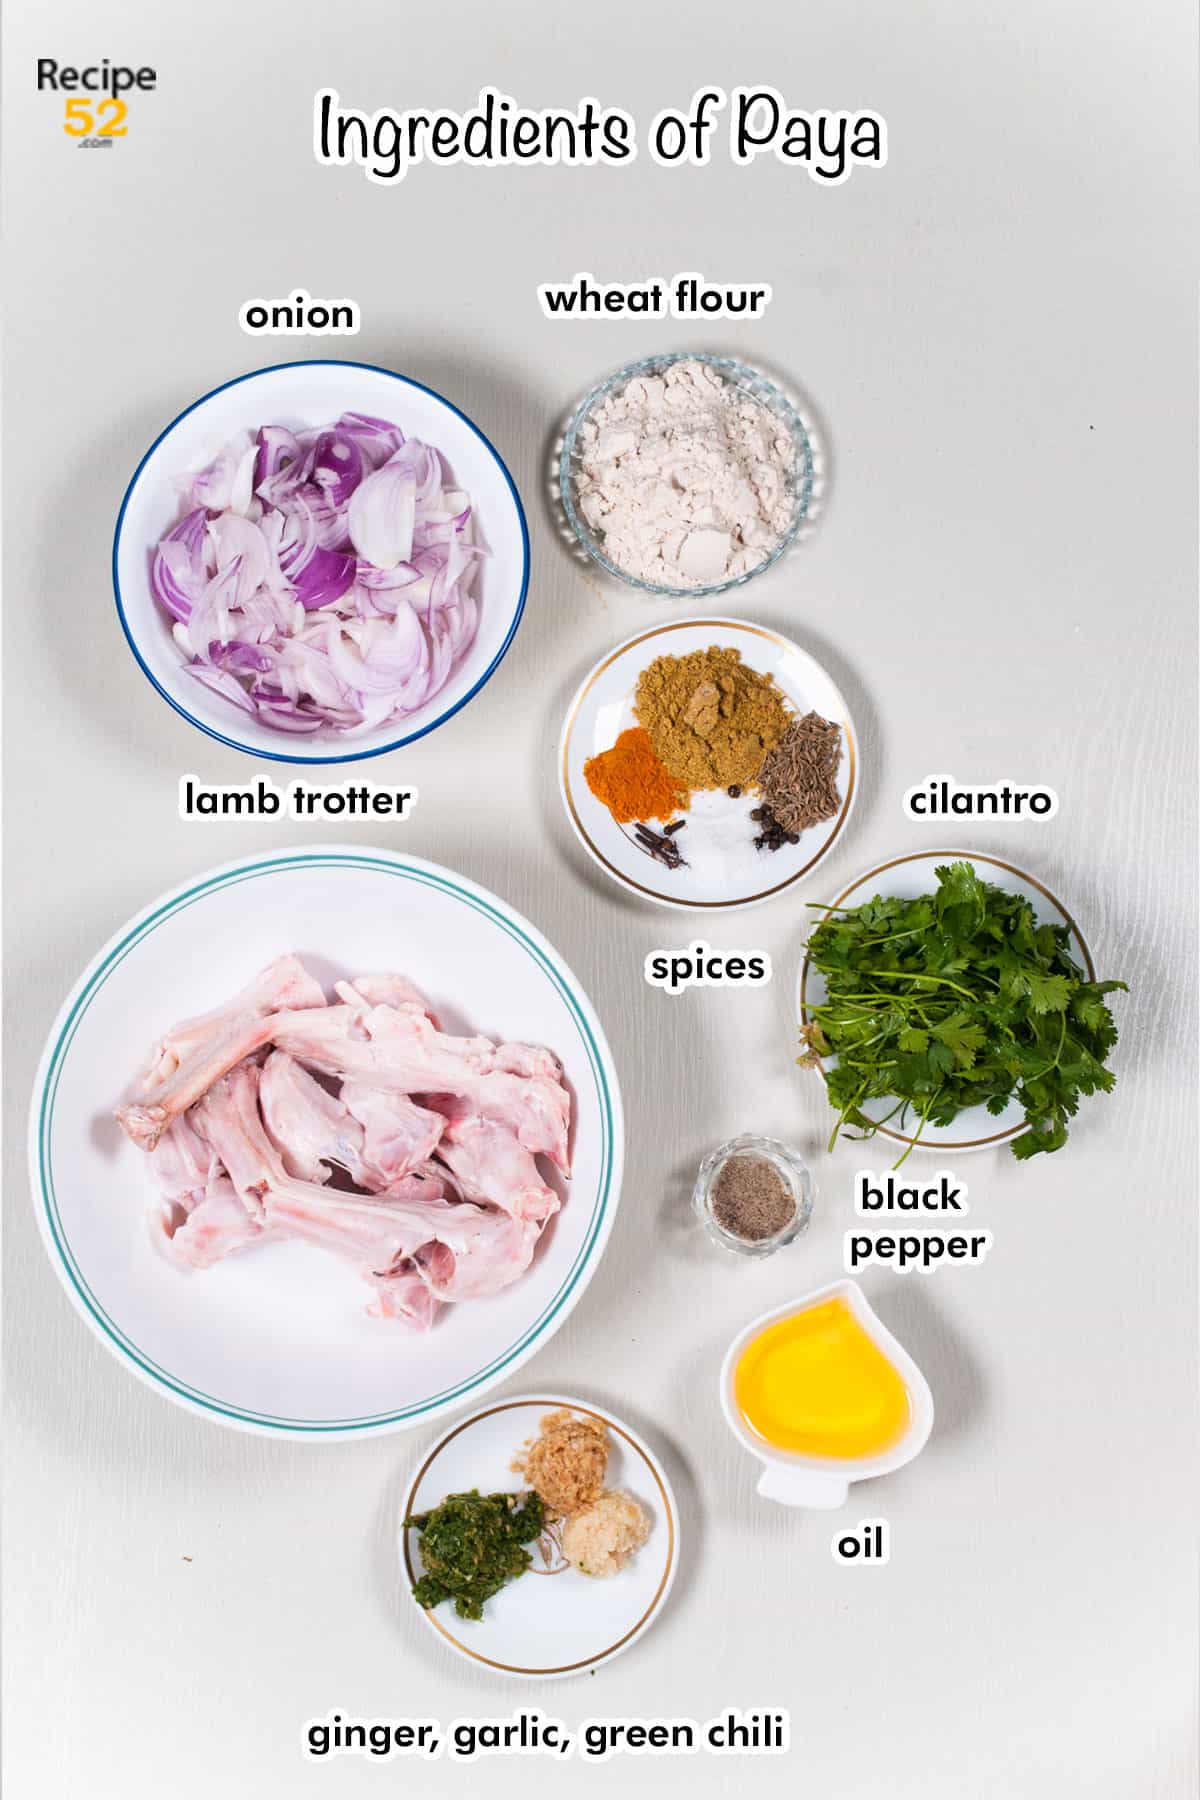 Ingredients of paya